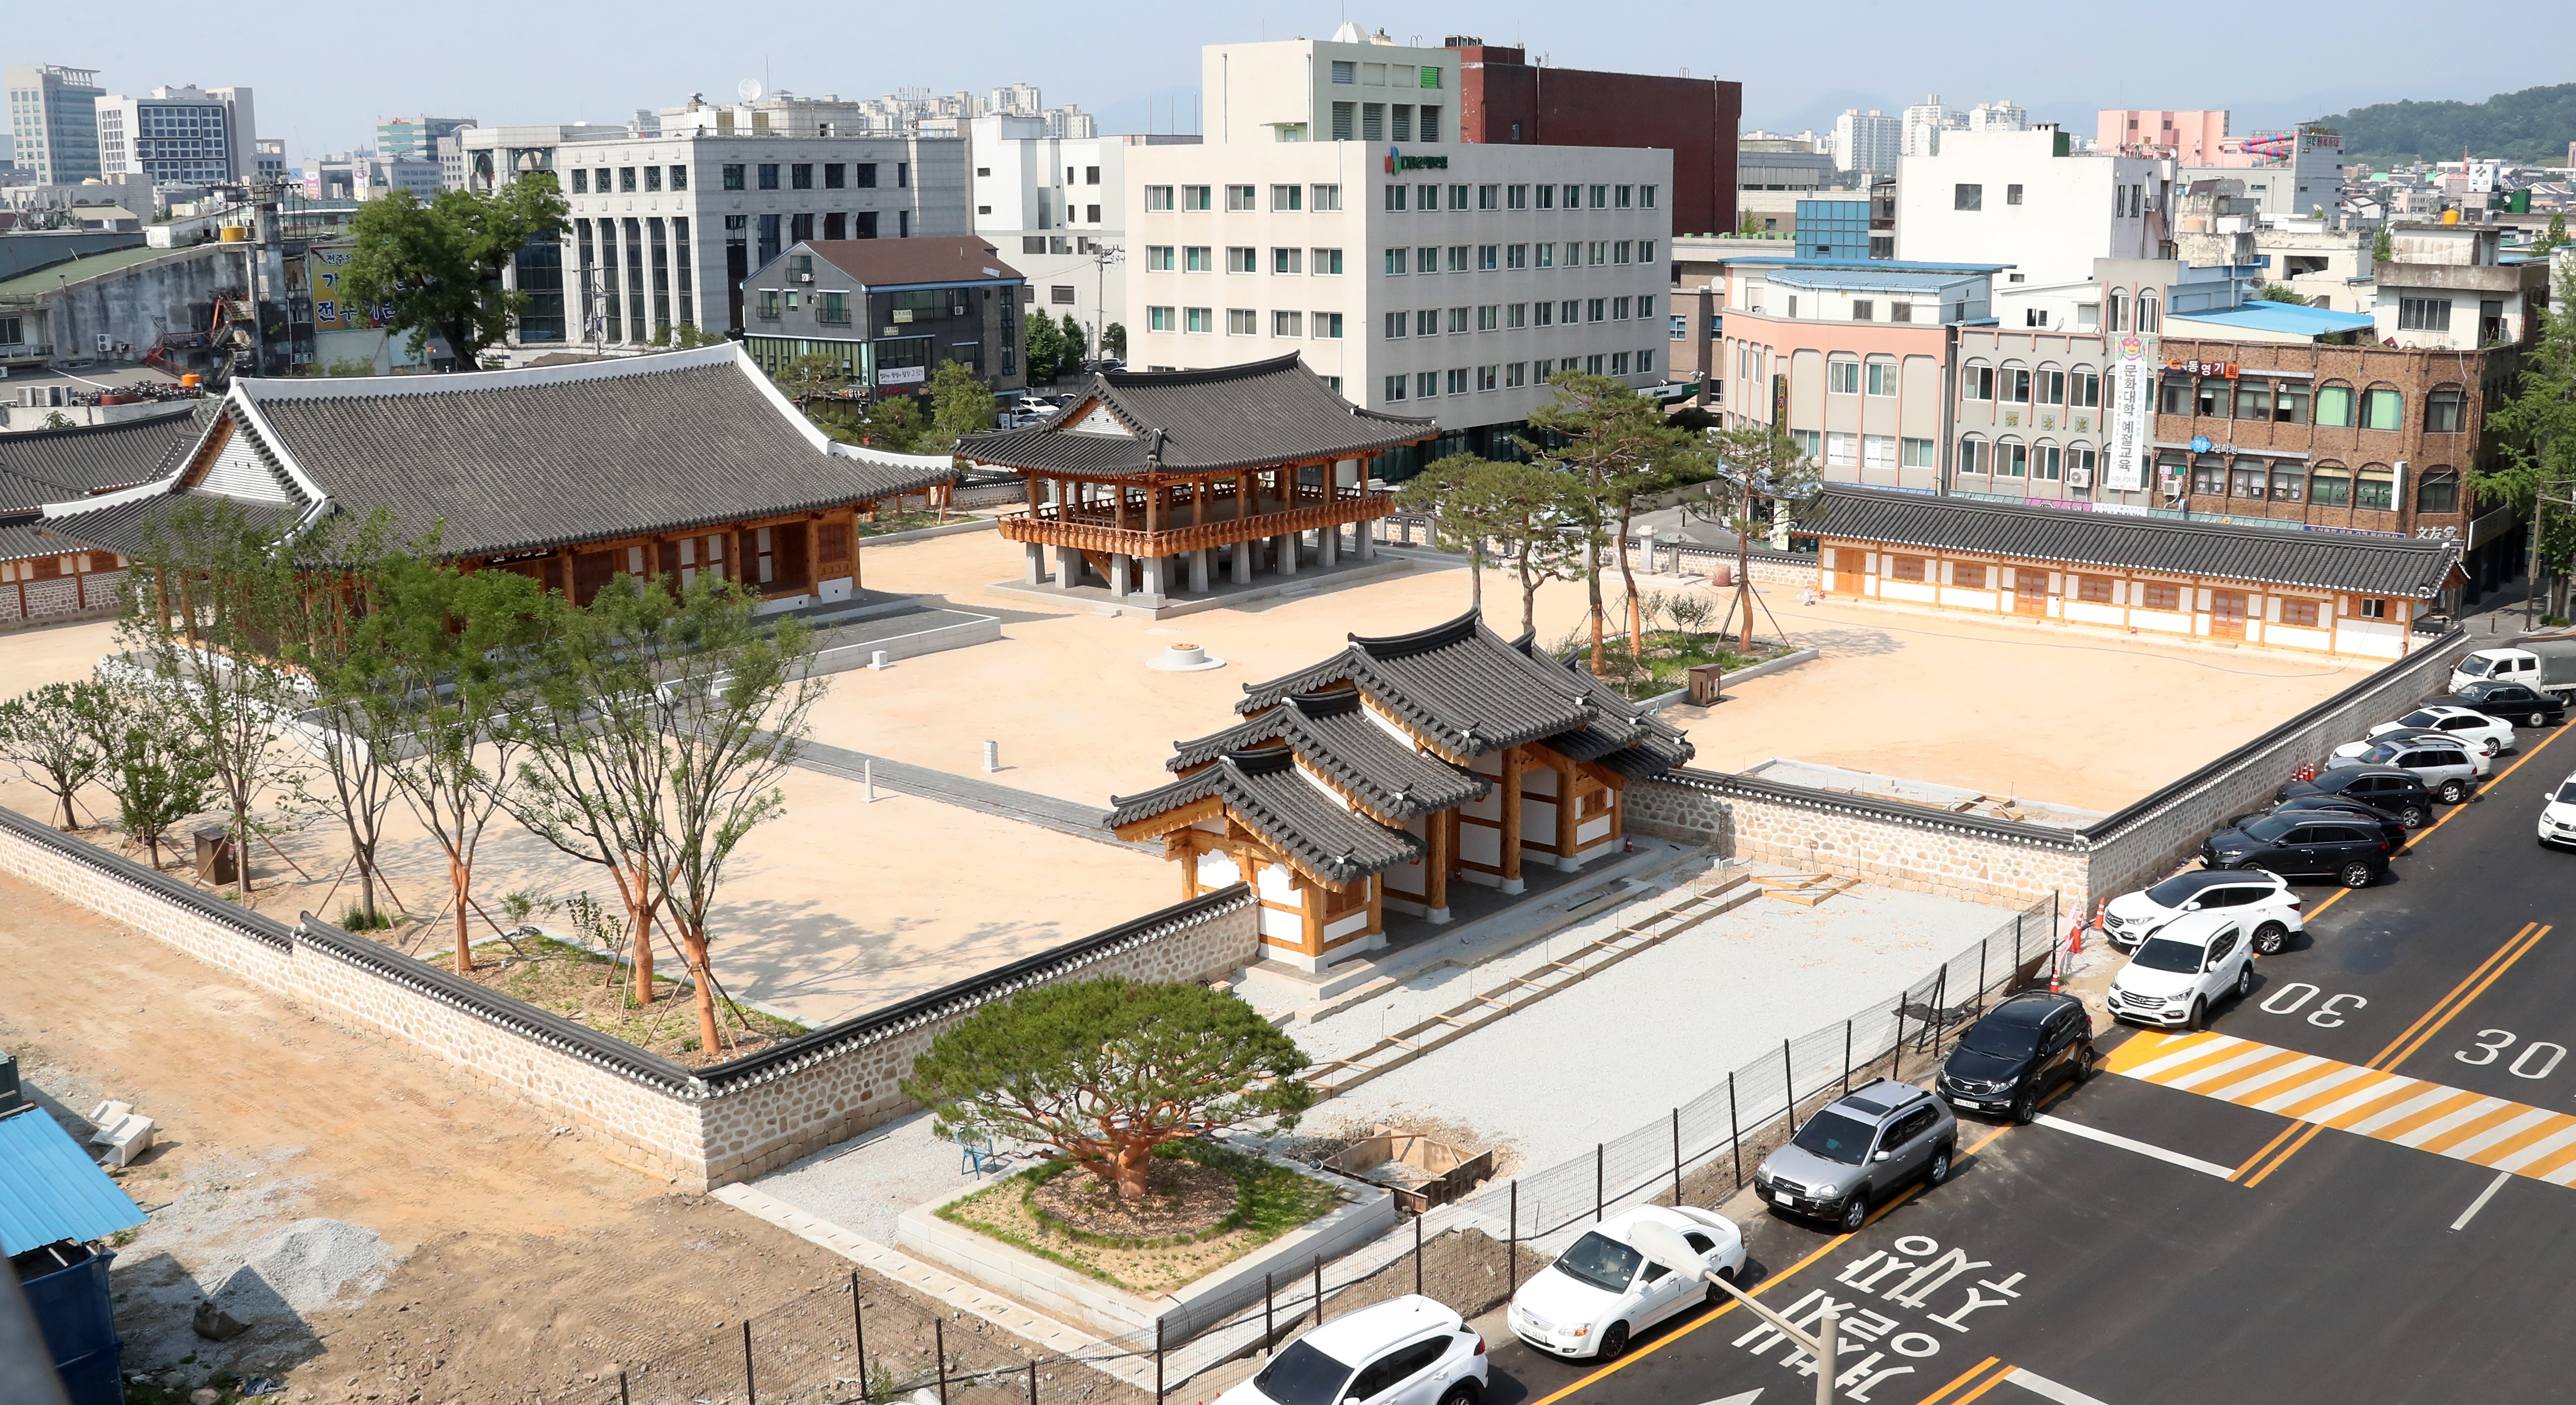 朝鲜时期道监司的办公衙门 全罗监营 将于10月7日重现昔日风貌 Business Wire